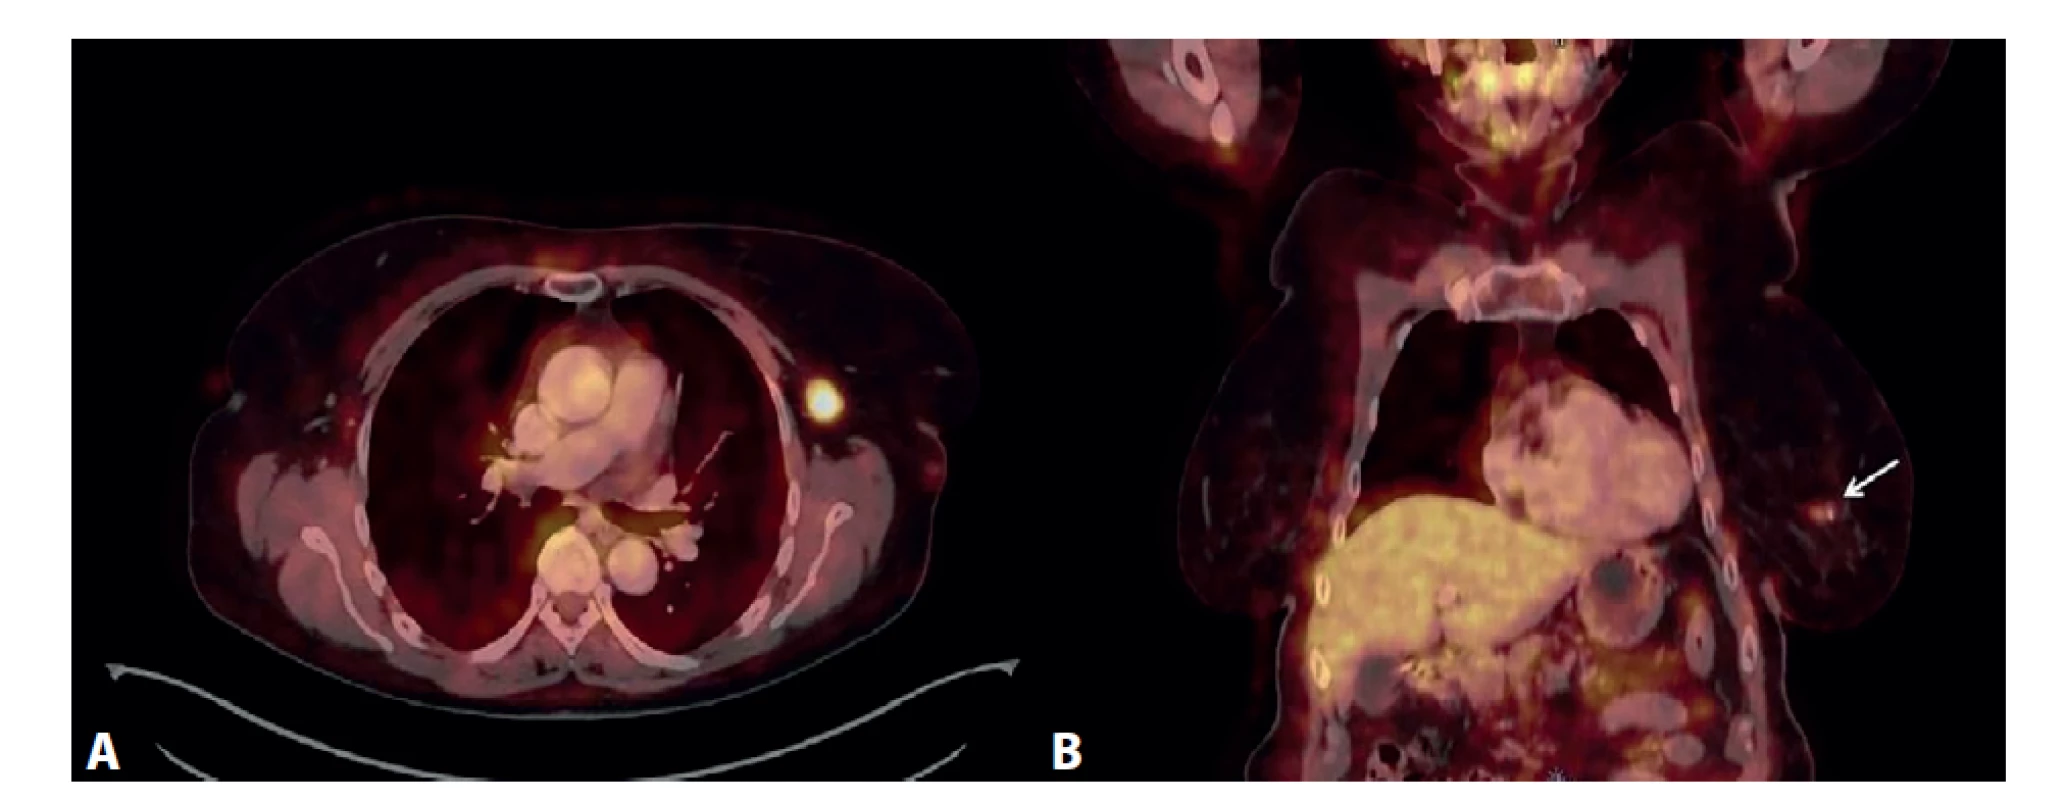 PET/CT vyšetření<br>
A) Výrazný hypermetabolizmus glukózy v jedné lymfatické uzlině levé axily, axiální zobrazení. B) Mírná akumulace FDG
v ložisku levého prsu (označeno šipkou), koronální zobrazení.<br>
Fig. 7: PET/CT examination<br>
A) Significant glucose hypermetabolism in one lymph node of the left axilla, axial view. B) Mild accumulation of FDG in
the lesion of the left breast (marked by the arrow), coronal view.